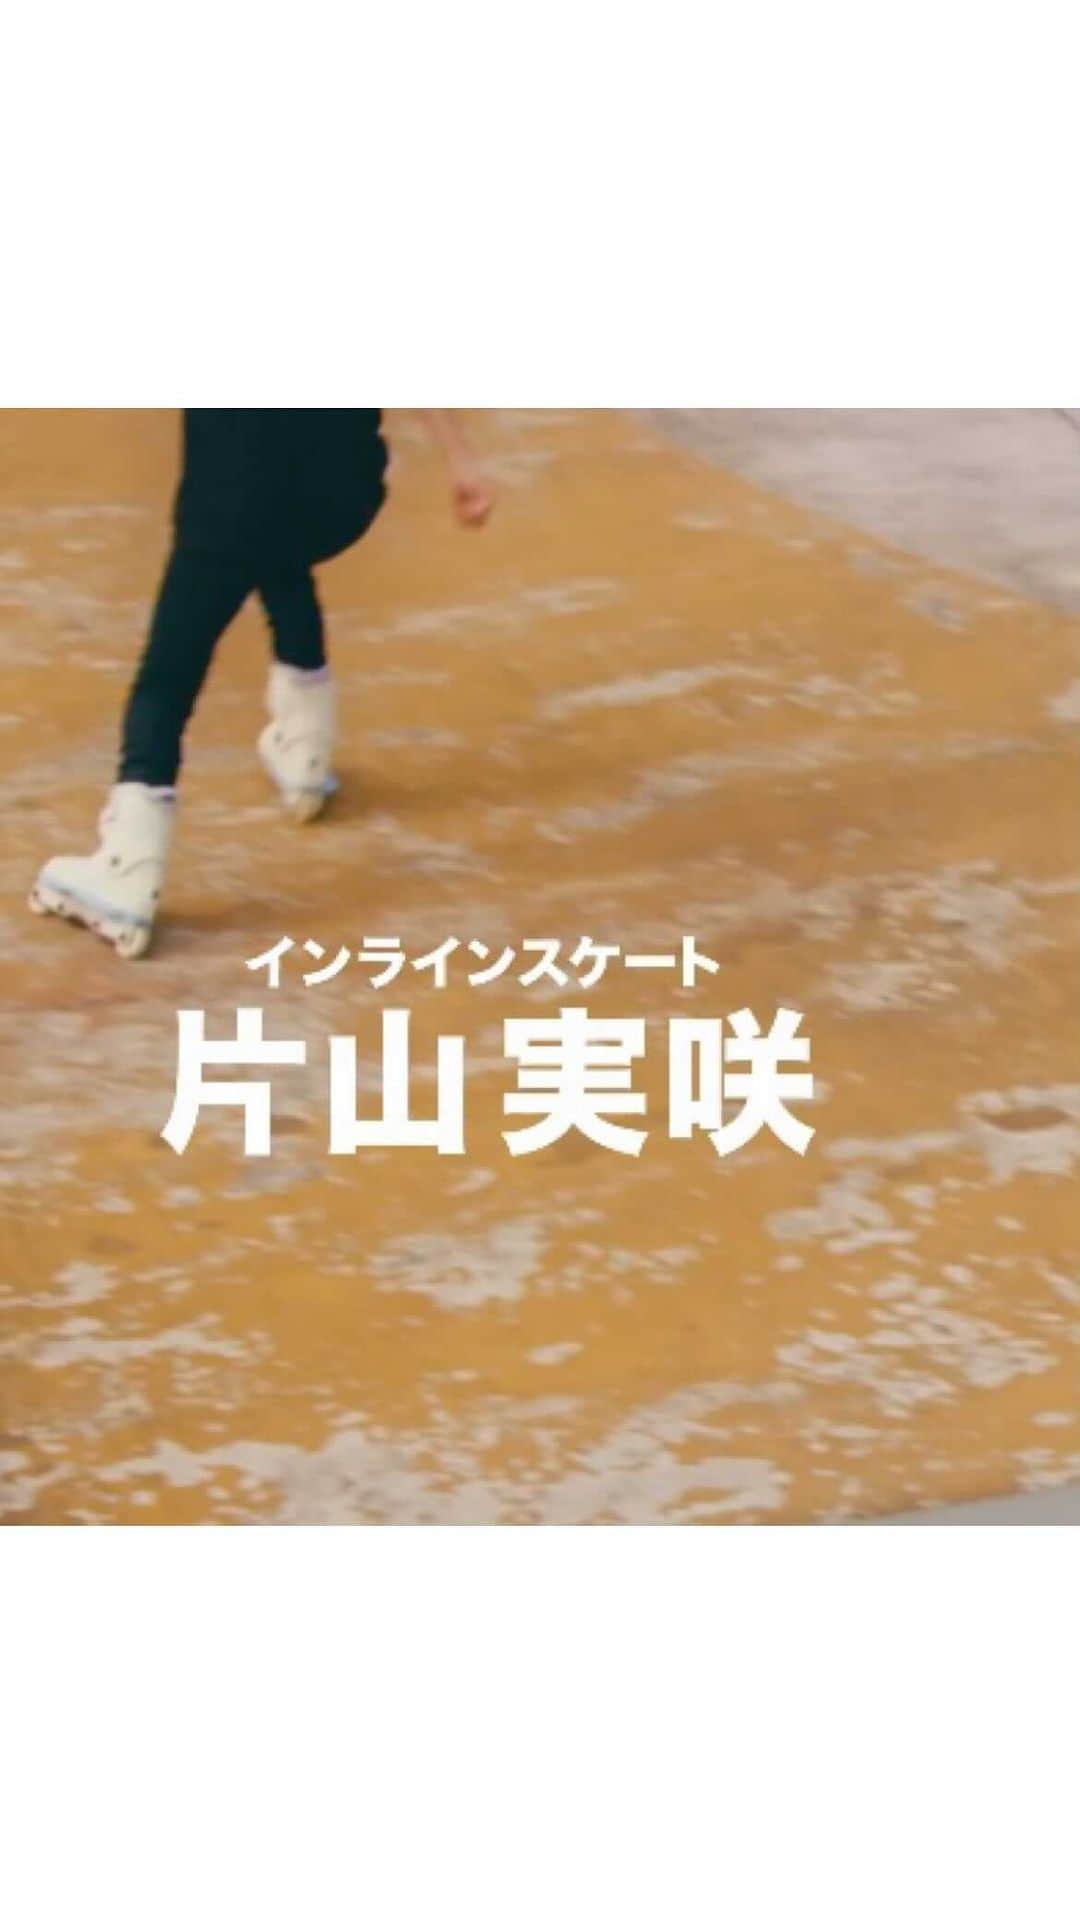 au公式Instagramアカウントのインスタグラム：「#ハタチが未来をつなぐぞ 🤝  💐ハタチの可能性 vol.19 インラインスケート「片山実咲」 💐 @misaki_katayama   8歳からインラインスケートをはじめる。 2018年に全日本選手権で準優勝し日本代表に選出。2019年、広島県で開催された世界大会「FISE HIROSHIMA」にて優勝するなど数々の世界大会で活躍中。現在は選手だけでなく、講師としても活動している。  ------  #ハタチが未来をつなぐぞ とは！ 2022年に新成人を迎えるパフォーマー20名と「ずっと、もっと、つなぐぞ。au」がコラボ！ 5Gサービスとパフォーマーの可能性、そして未来を表現した動画を公開していきます🥳  ------  - 片山実咲 - インラインスケートは手すりの上を滑ったり、普段の生活には無いワクワクを味わえるところや新しい技が出来たときの達成感が魅力のスポーツです。自分との闘いになるスポーツなので、常に自分を超えていき結果的に大会で勝てたら最高だなと思います。 スケートを知らない人に私の滑っている姿を見てワクワクしてもらえたら嬉しいです。 これから世界で活躍するスケーターになって、たくさんの人にスケートの魅力を伝えていきたいです。  ------  #ハタチが未来をつなぐぞ  #ずっともっとつなぐぞau   #未来 #つなぐ #ハタチ #新成人 #インラインスケート #片山実咲  #locaskate #future #au #kddi #5g #au5g」